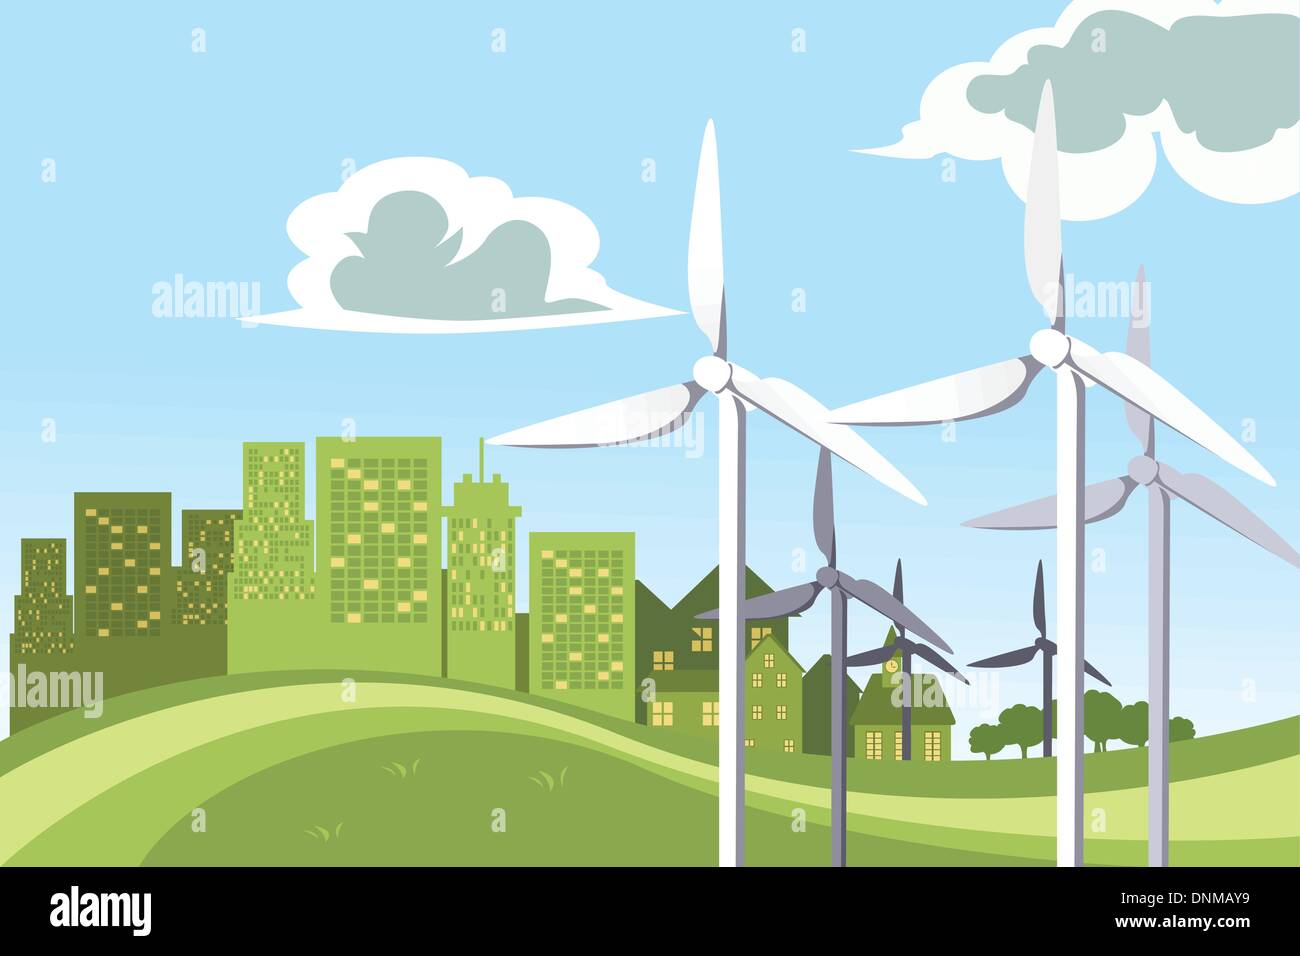 Un vecteur illustration d'un concept d'éoliennes alimentant la ville Illustration de Vecteur